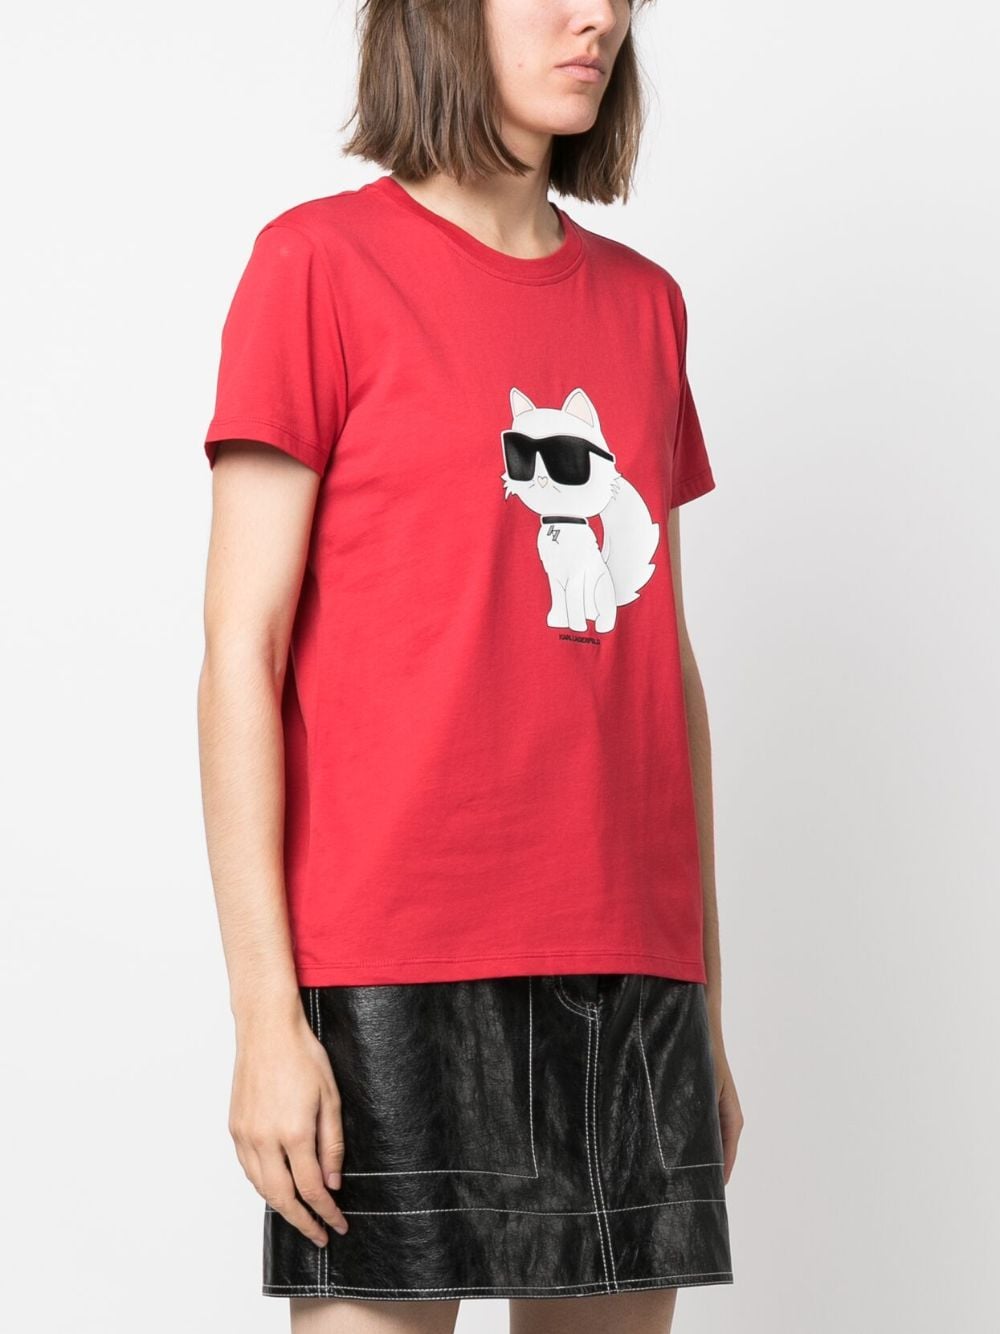 Karl Lagerfeld Ikonik 2.0 T-shirt Rood